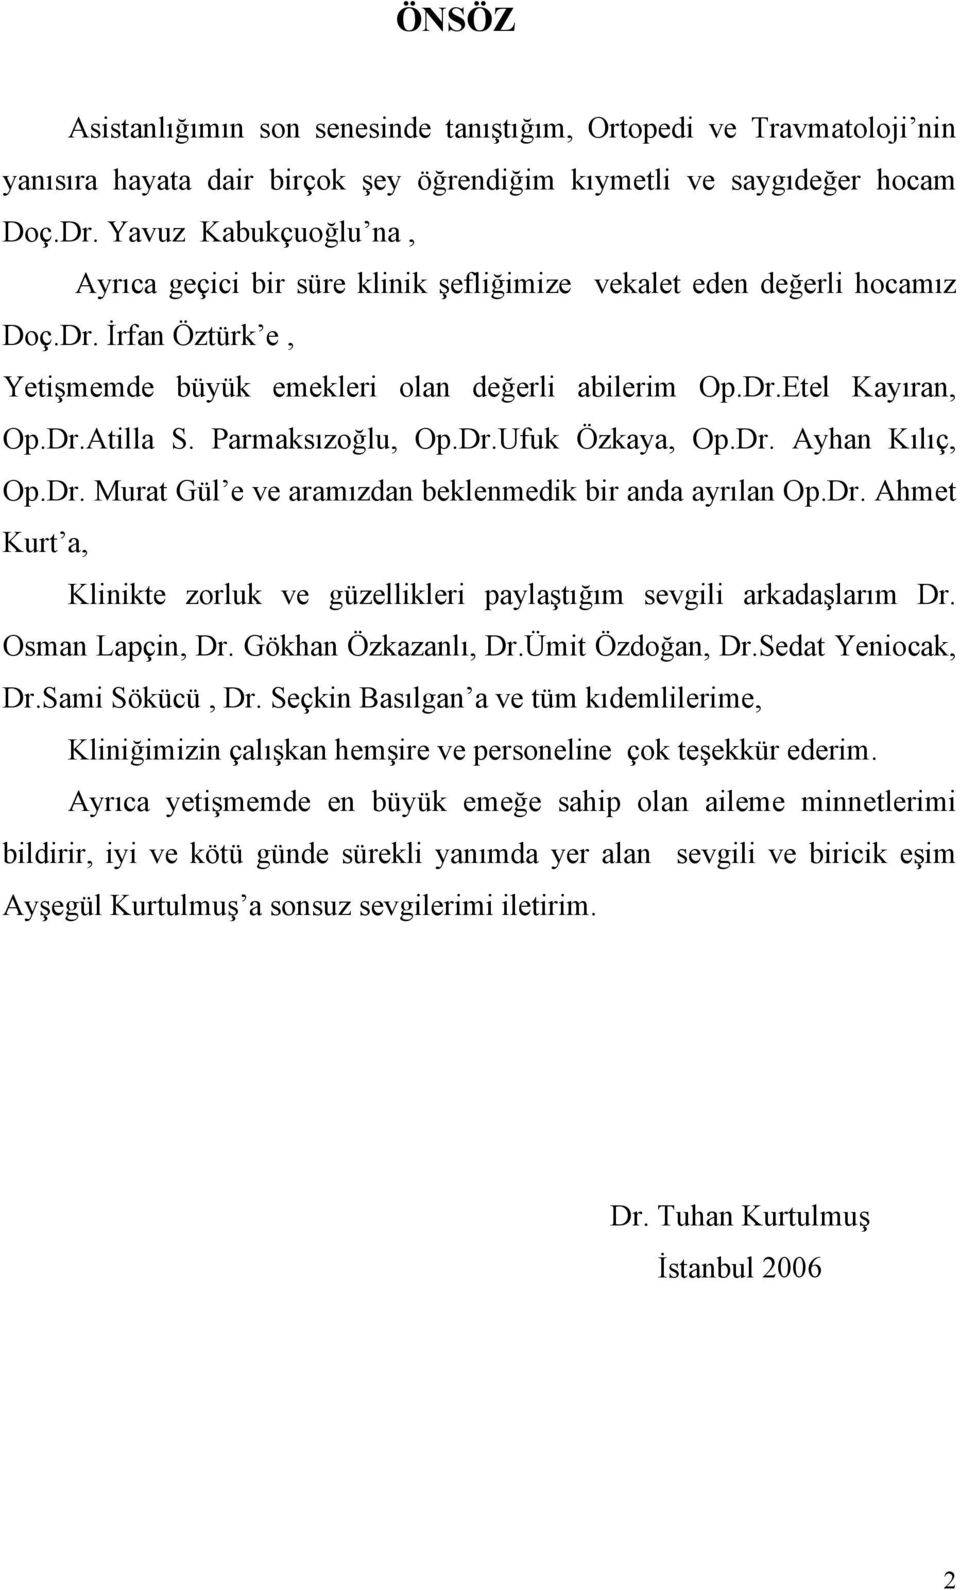 Parmaksızoğlu, Op.Dr.Ufuk Özkaya, Op.Dr. Ayhan Kılıç, Op.Dr. Murat Gül e ve aramızdan beklenmedik bir anda ayrılan Op.Dr. Ahmet Kurt a, Klinikte zorluk ve güzellikleri paylaştığım sevgili arkadaşlarım Dr.